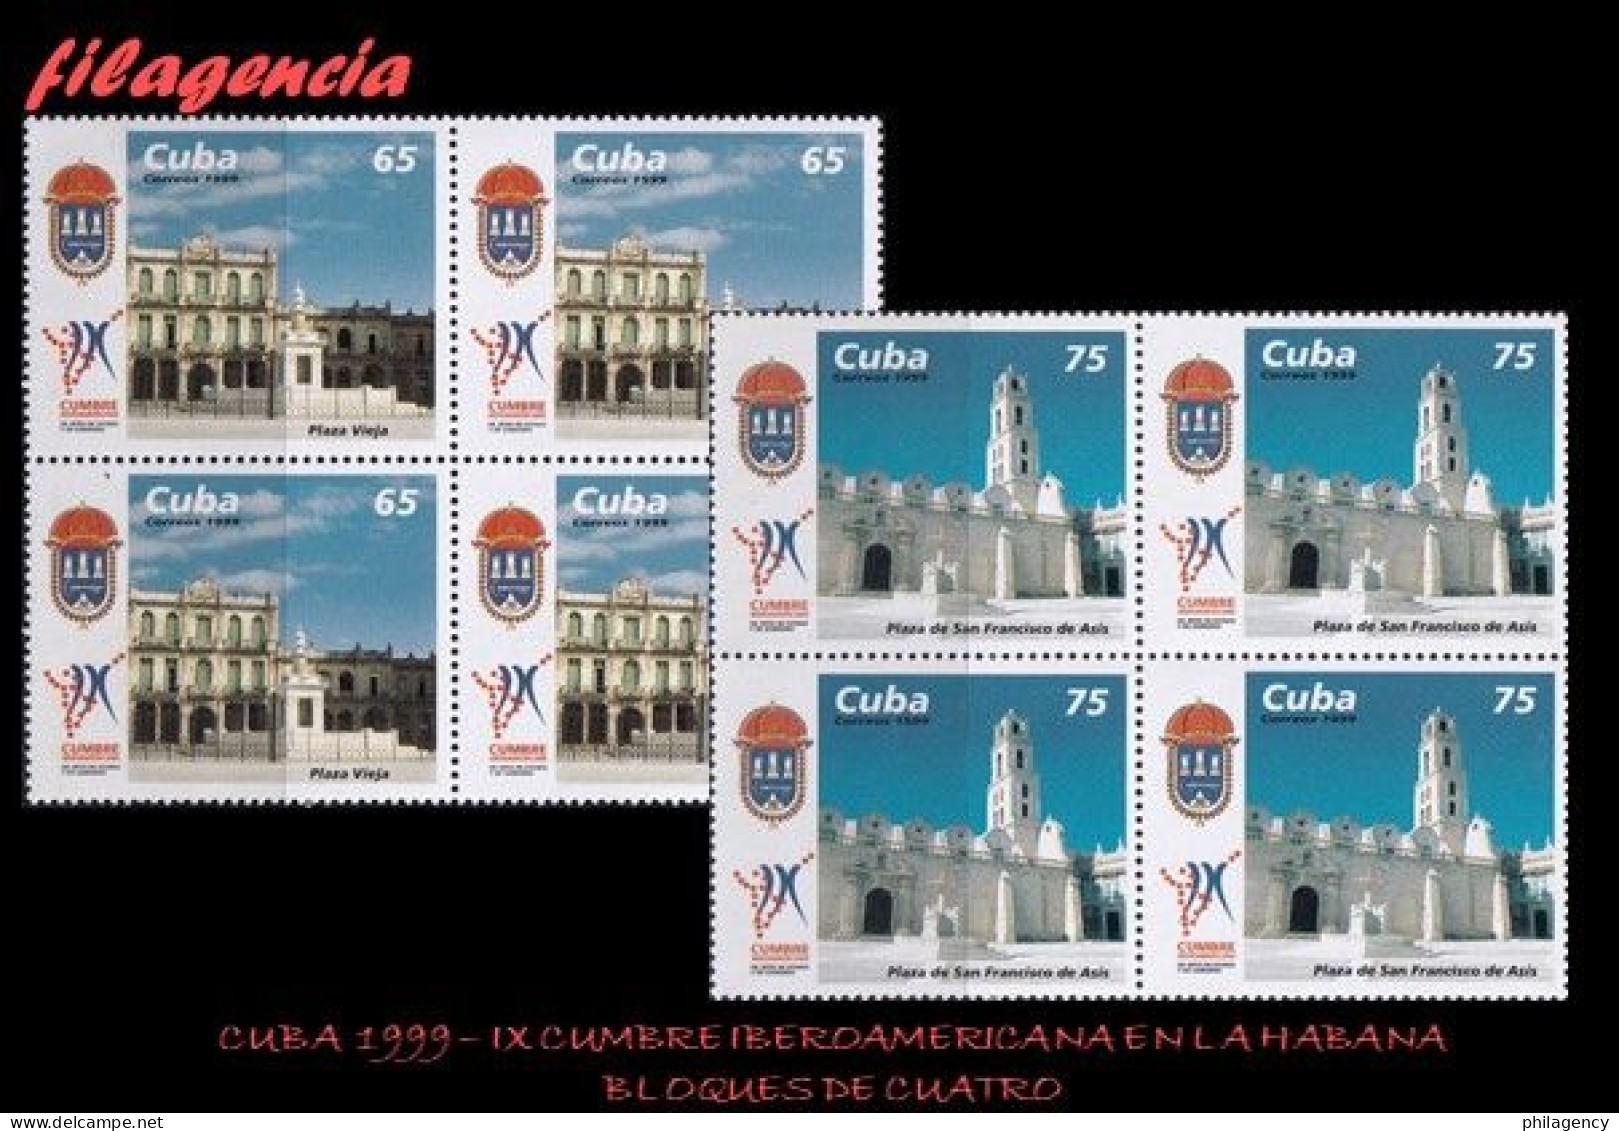 CUBA. BLOQUES DE CUATRO. 1999-27 IX CUMBRE IBEROAMERICANA DE JEFES DE ESTADO EN LA HABANA - Ungebraucht